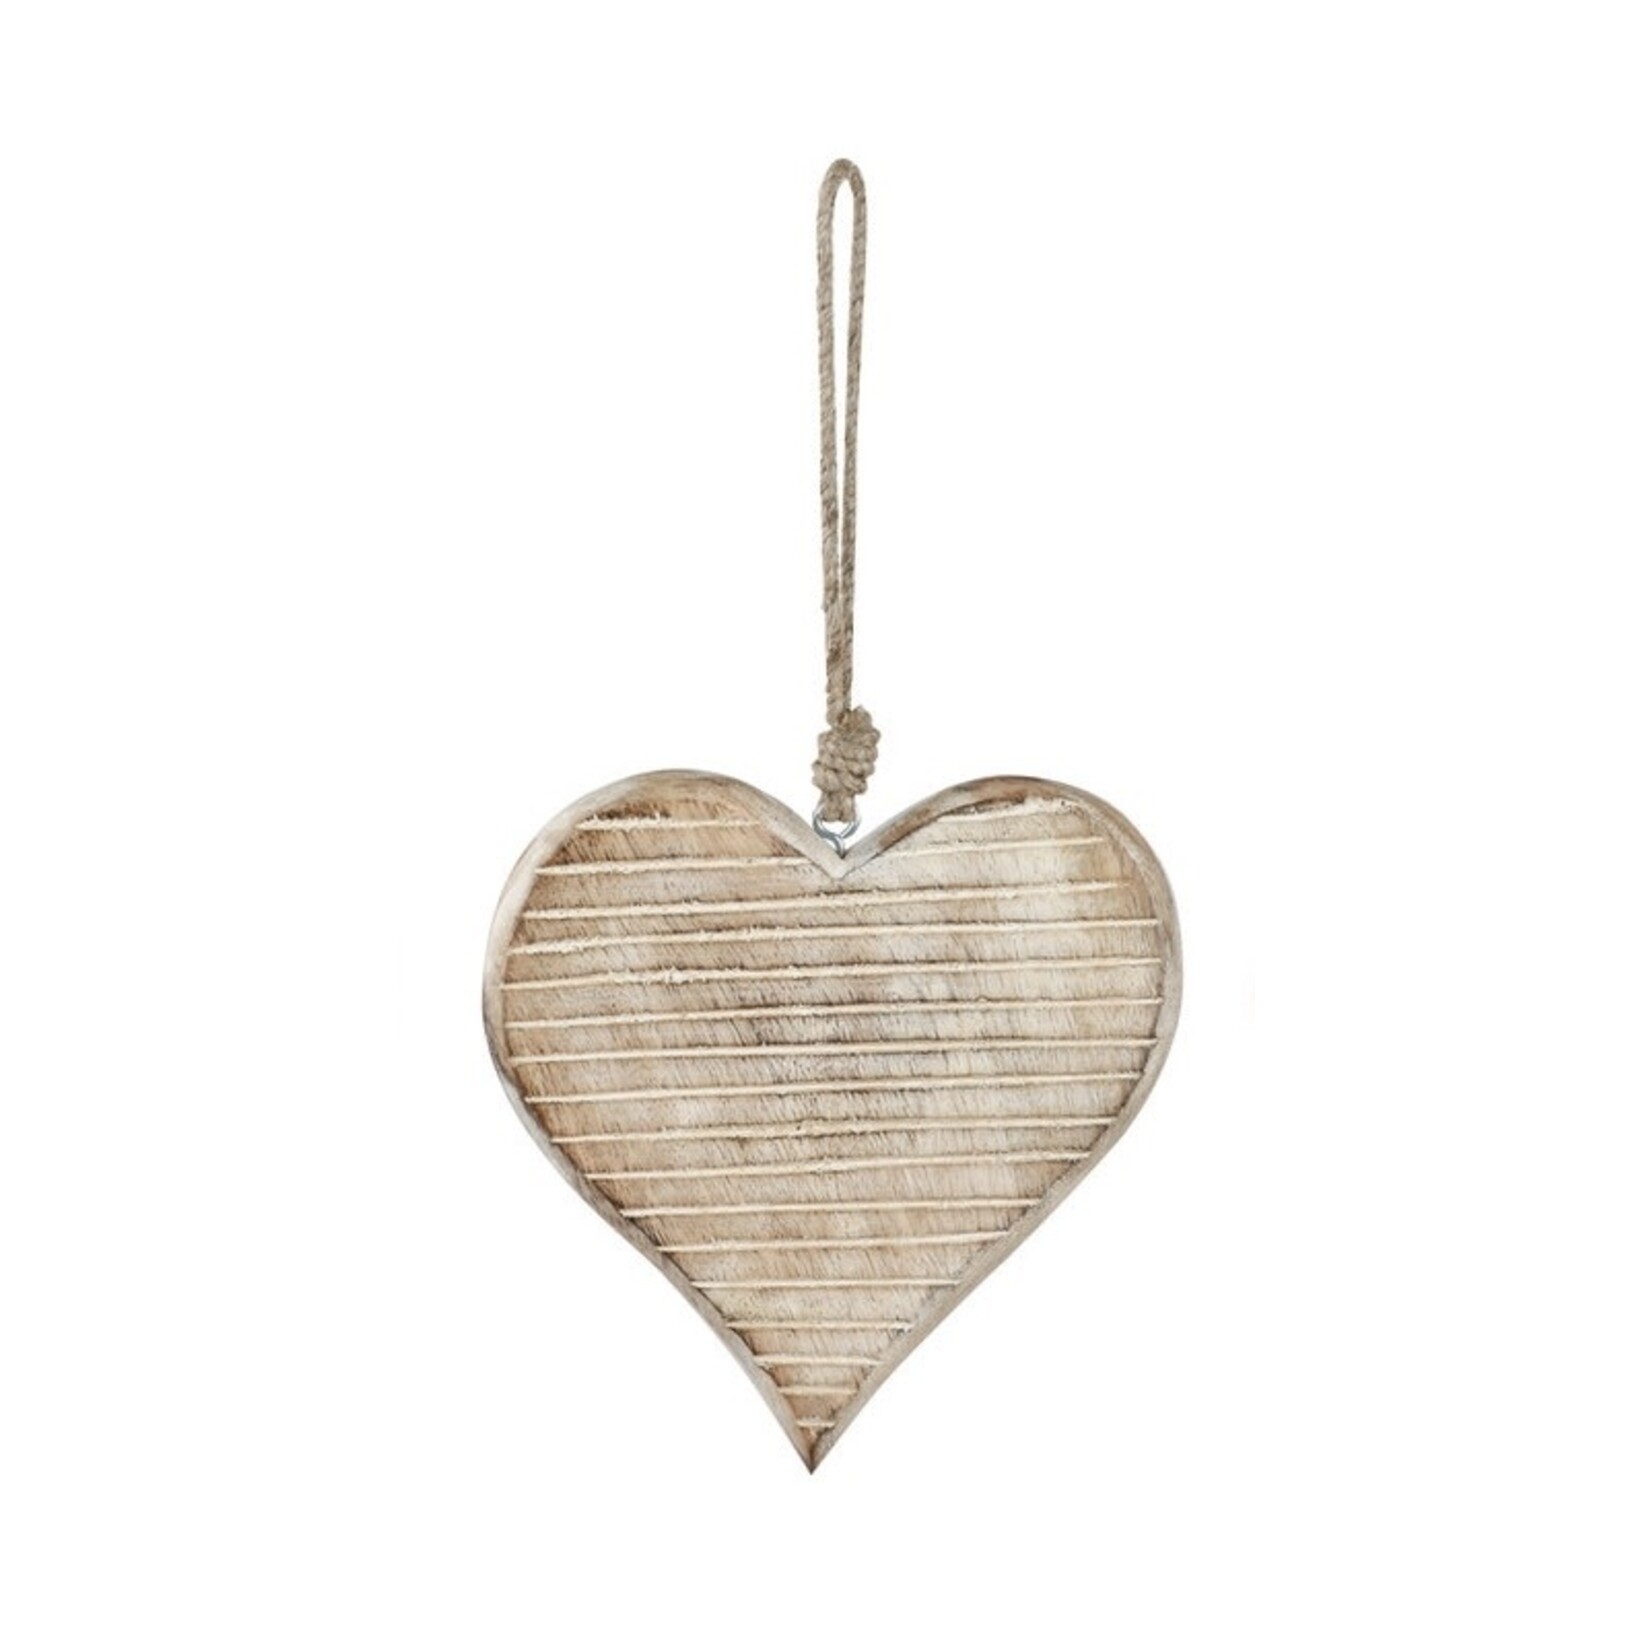 Demdaco Demdaco White Washed Wood Heart Ornament